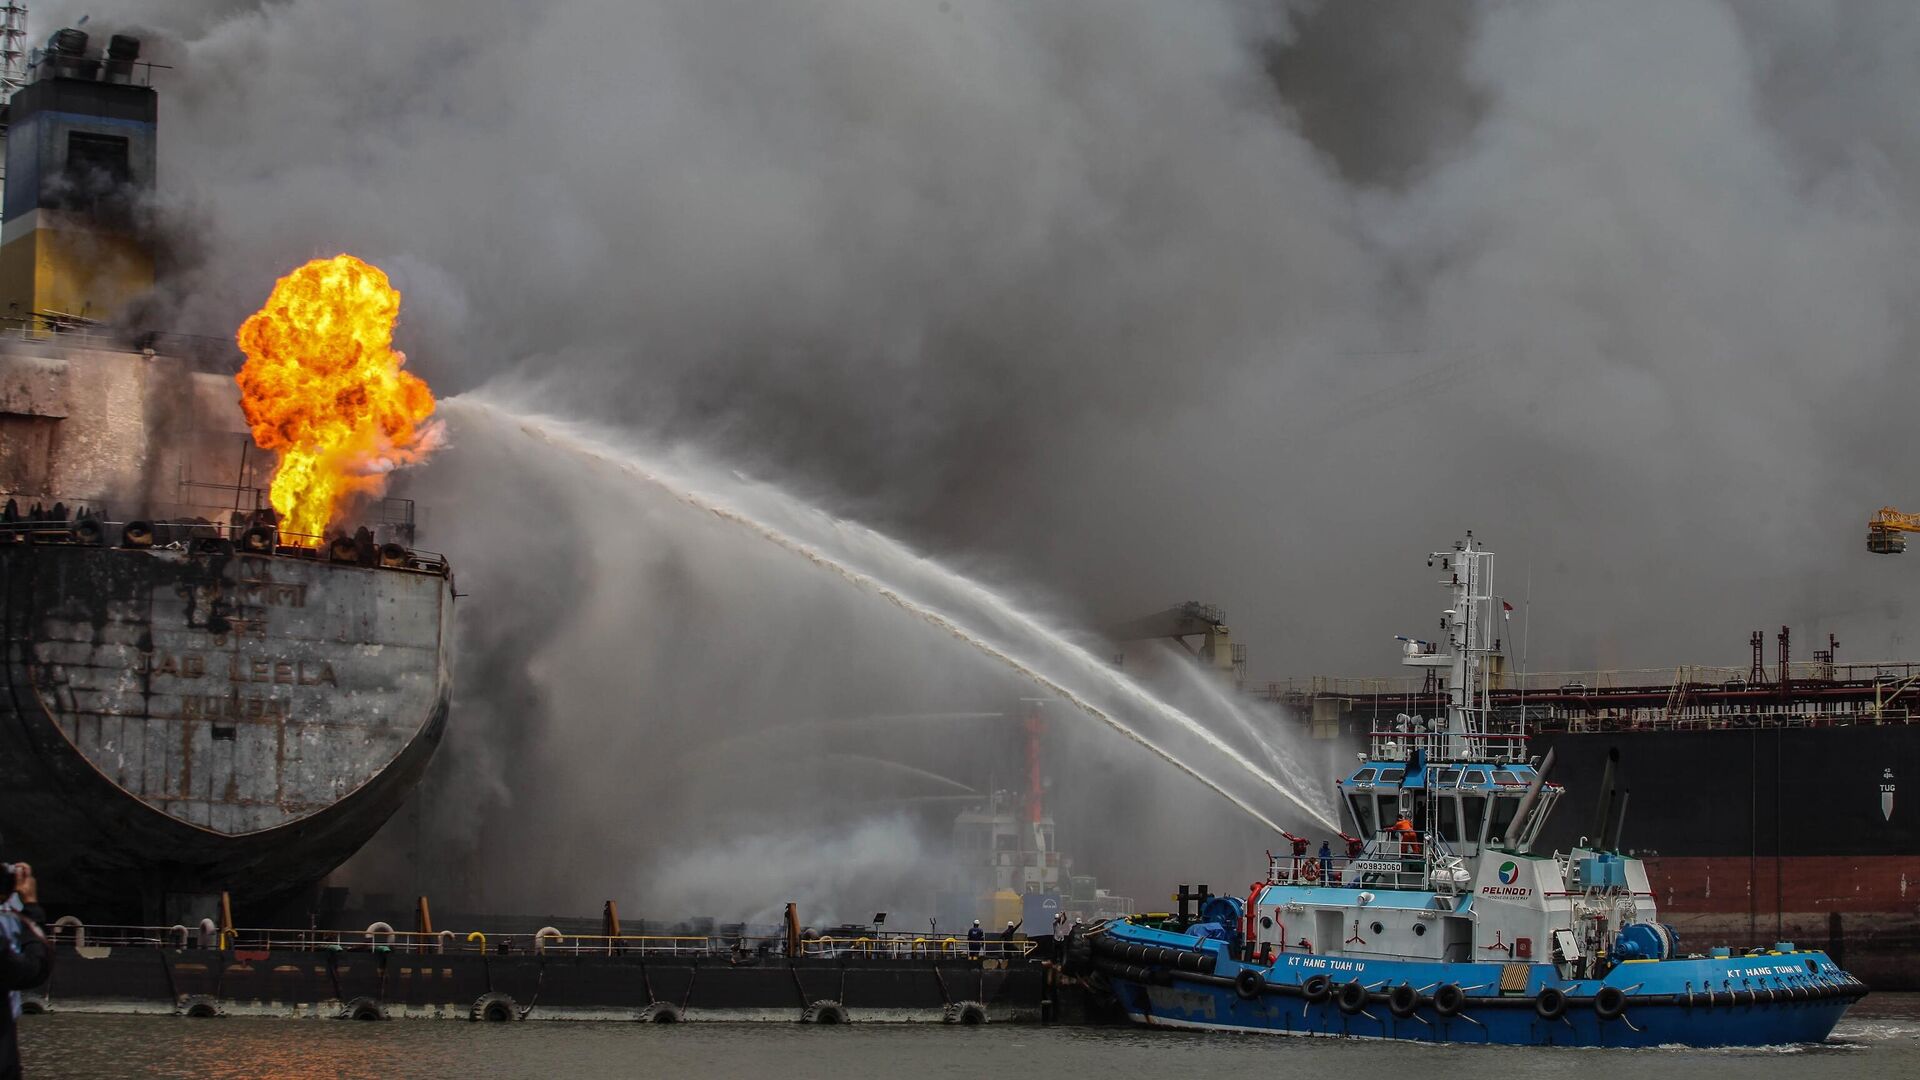 Нефтяной танкер горит в порту Белаван, Индонезия - РИА Новости, 1920, 12.05.2020